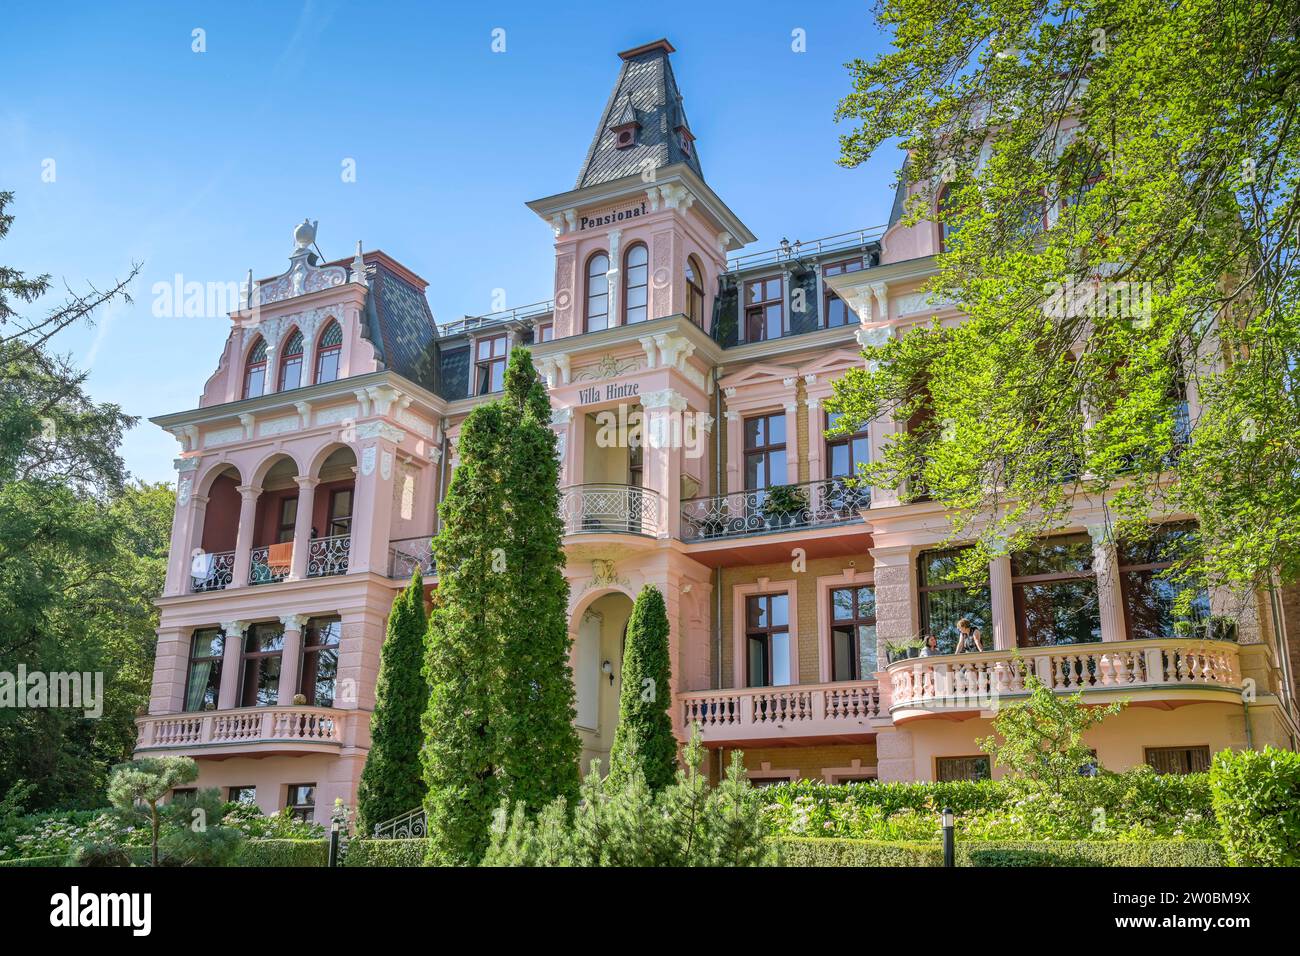 Villa Hintze, Delbrückstraße, Heringsdorf, Usedom, Mecklenburg-Vorpommern, Deutschland Banque D'Images